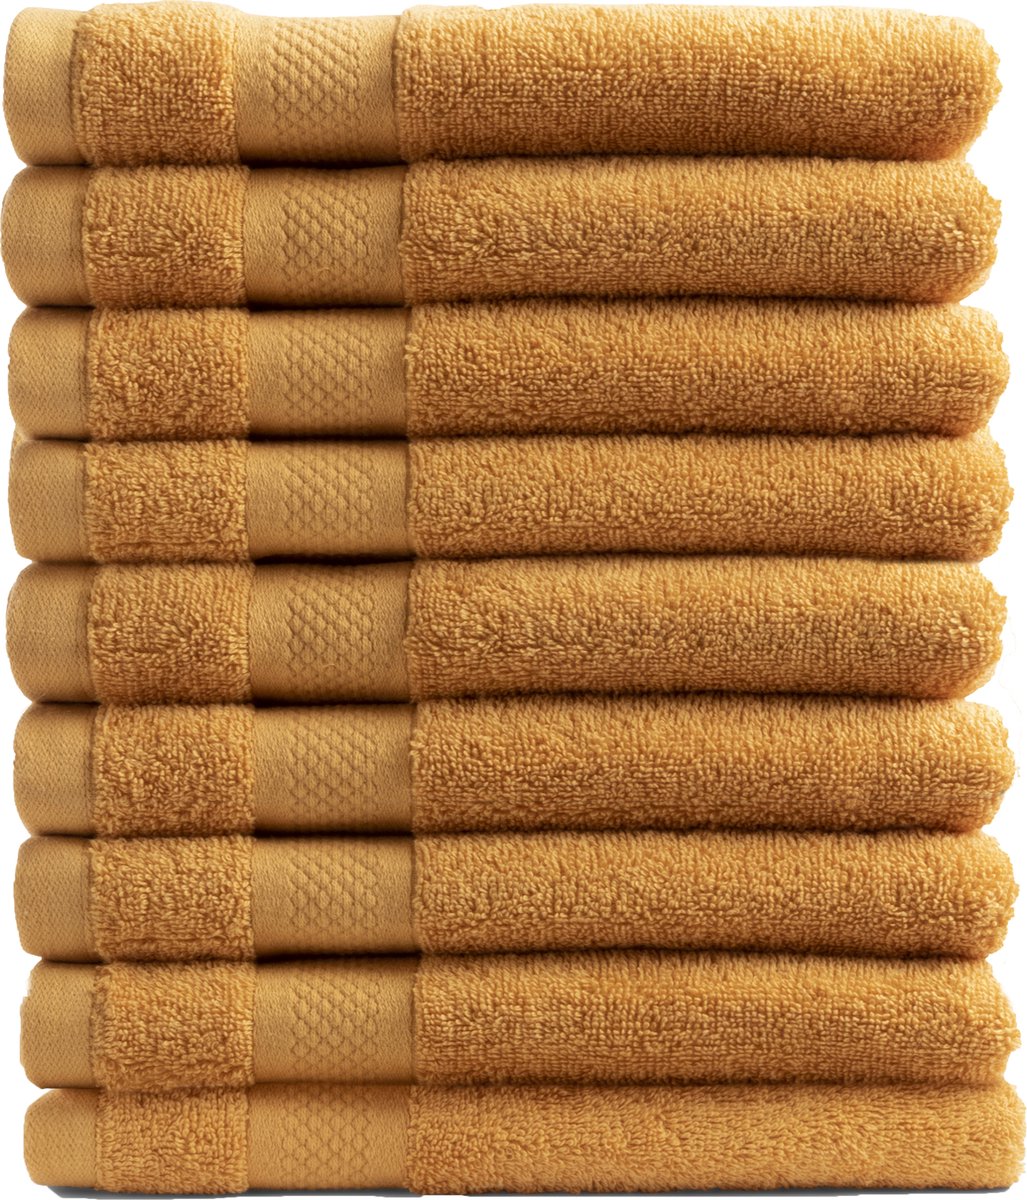 Handdoek Hotel Collectie - 9 stuks - 50x100 - oker geel